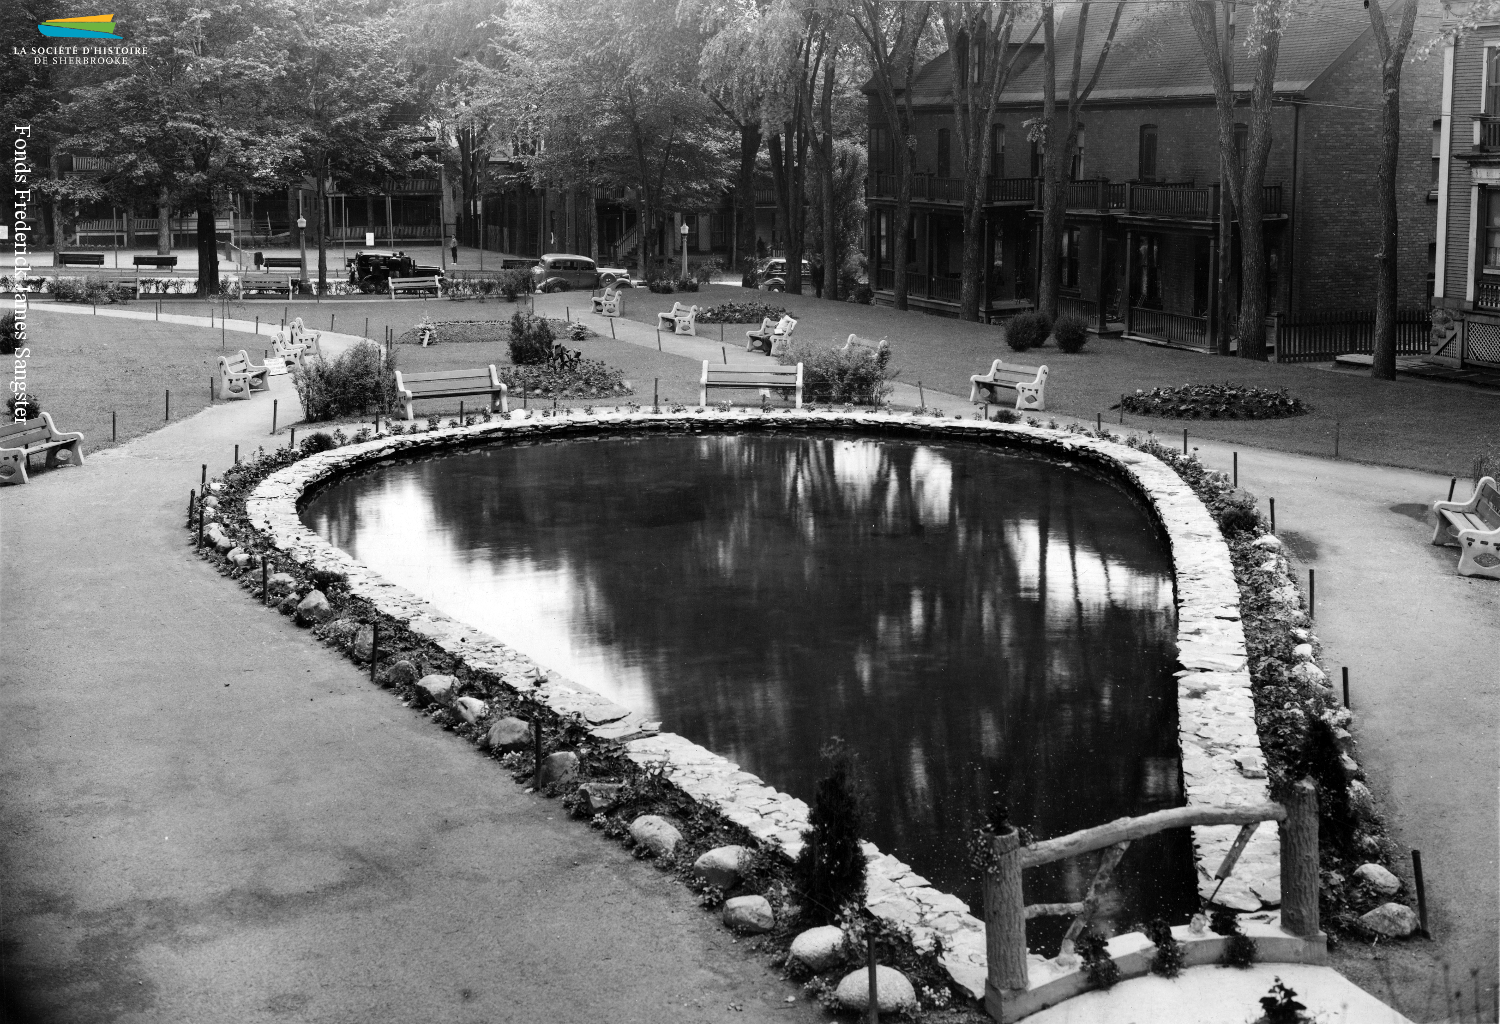 Une vue du parc Antoine-Racine, situé au coin des rues Brooks, Gillepsie et Ball, vers 1937. Le parc est créé en 1891 à la demande de citoyens, qui demandent un espace vert pour le quartier sud surpeuplé. Il porte le nom du premier évêque de Sherbrooke.